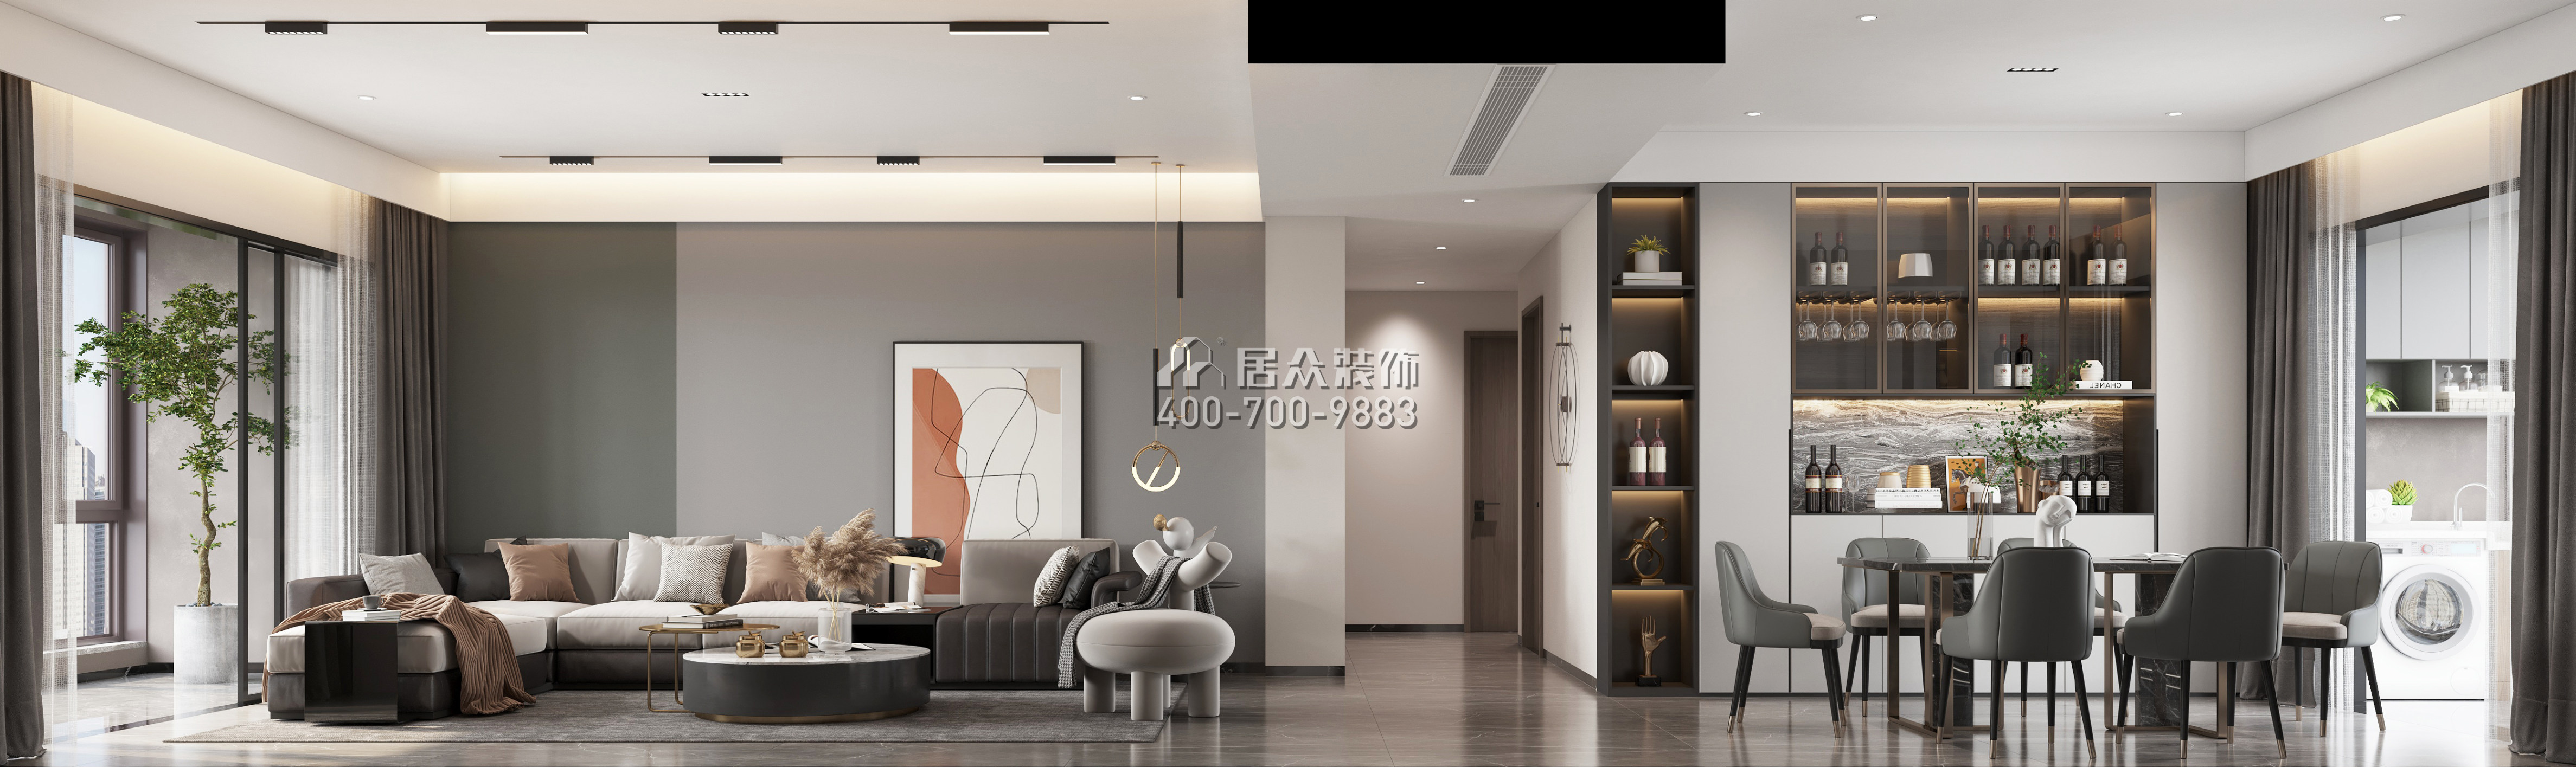 翠湖香山別苑139平方米現代簡約風格平層戶型客餐廳一體裝修效果圖